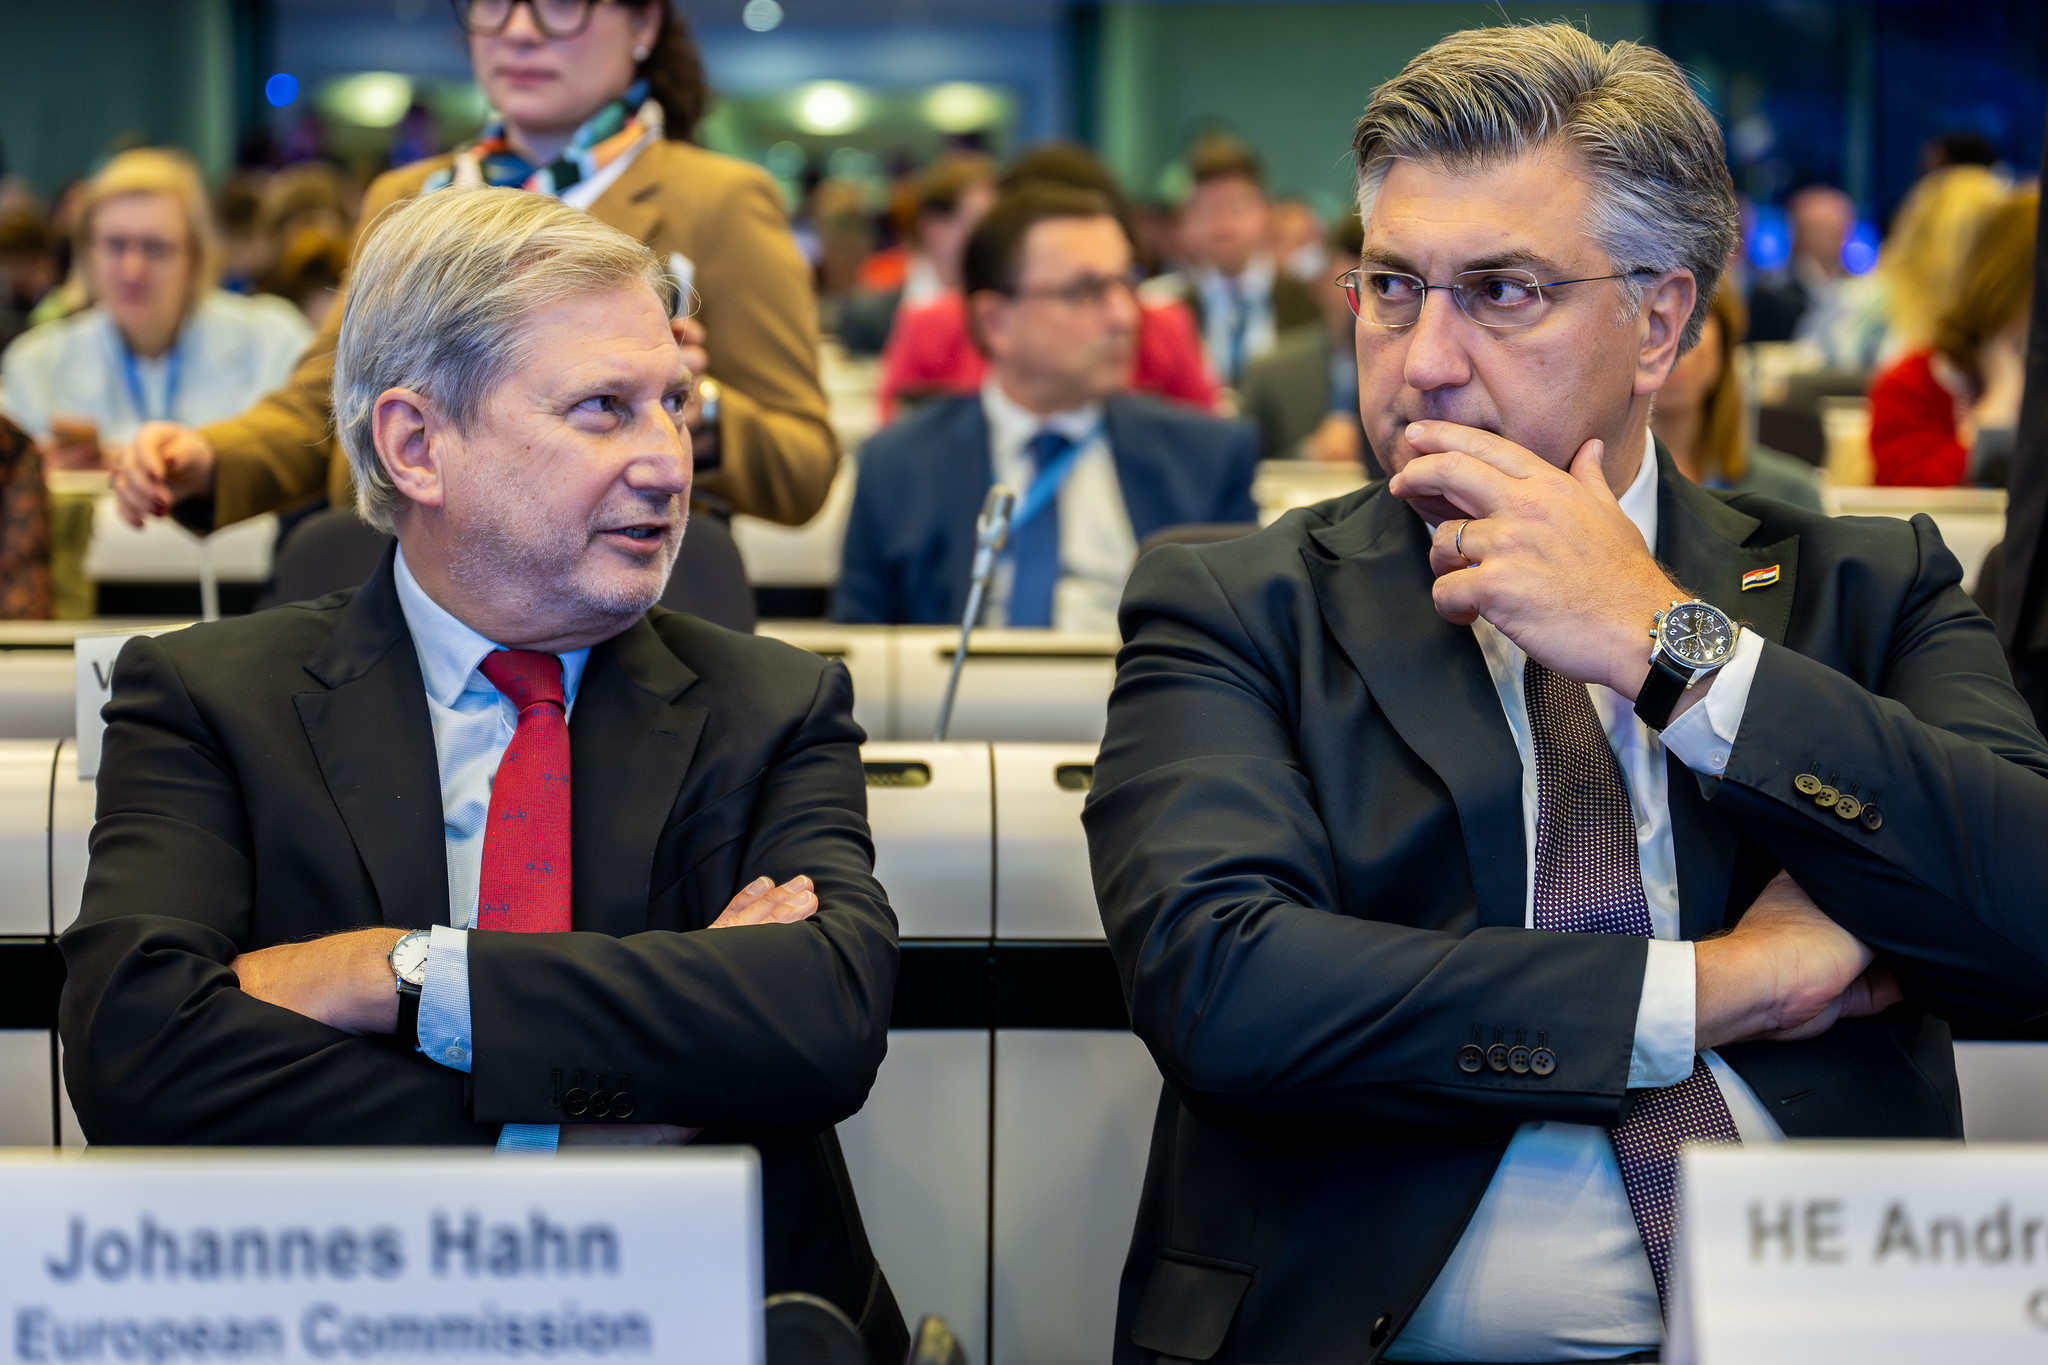 Commissioner Hahn all'evento sul Budget; crediti © Presidenza belga del Consiglio dell'Unione europea / Julien Nizet